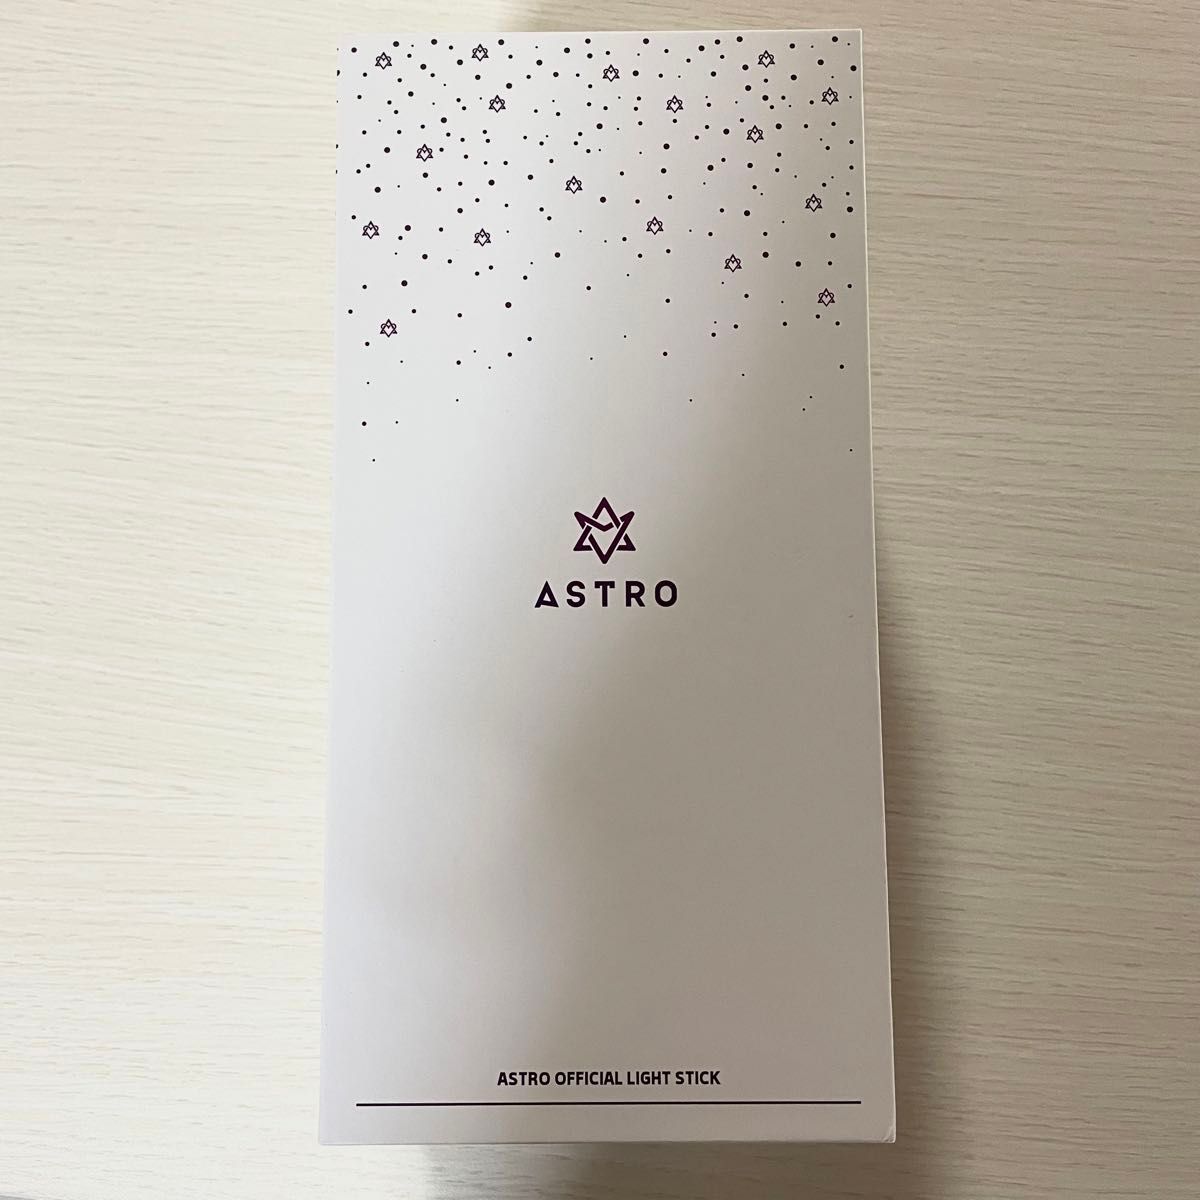 【即購入可能】 ASTRO アストロ ロボン ペンライト ver.1 新品・未使用